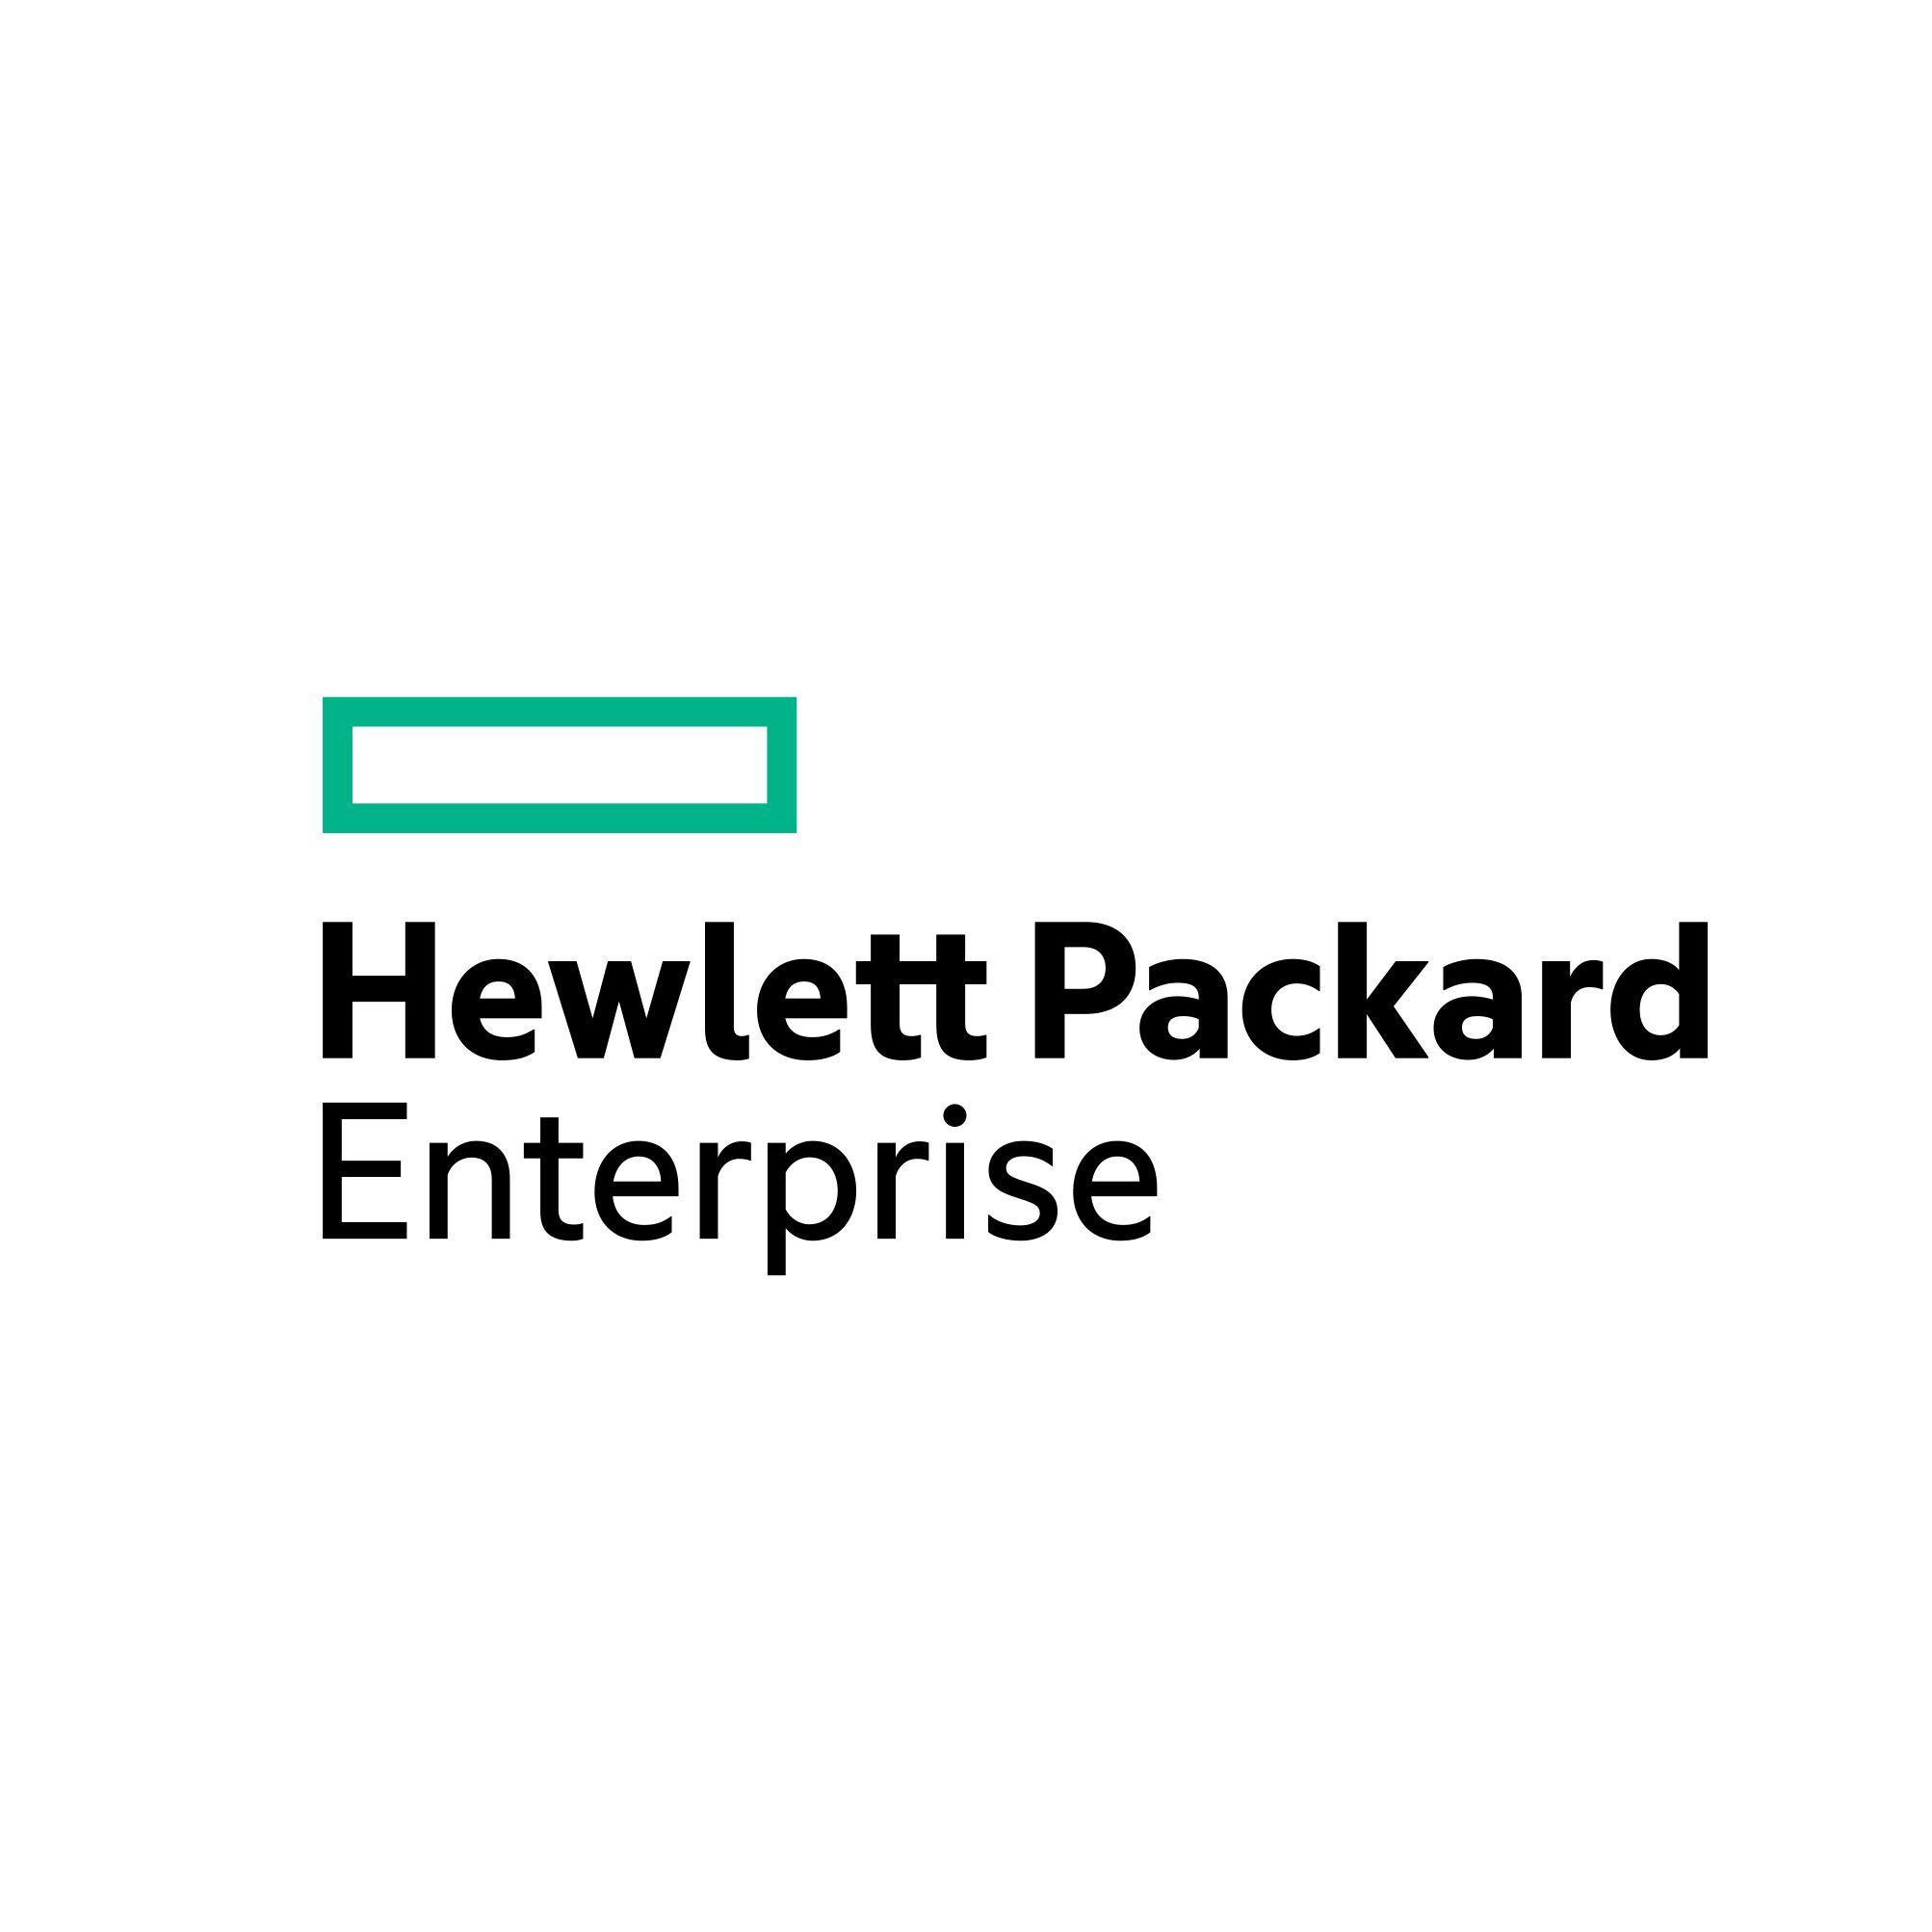 HP Intel Logo - Hewlett Packard Enterprise (HPE)